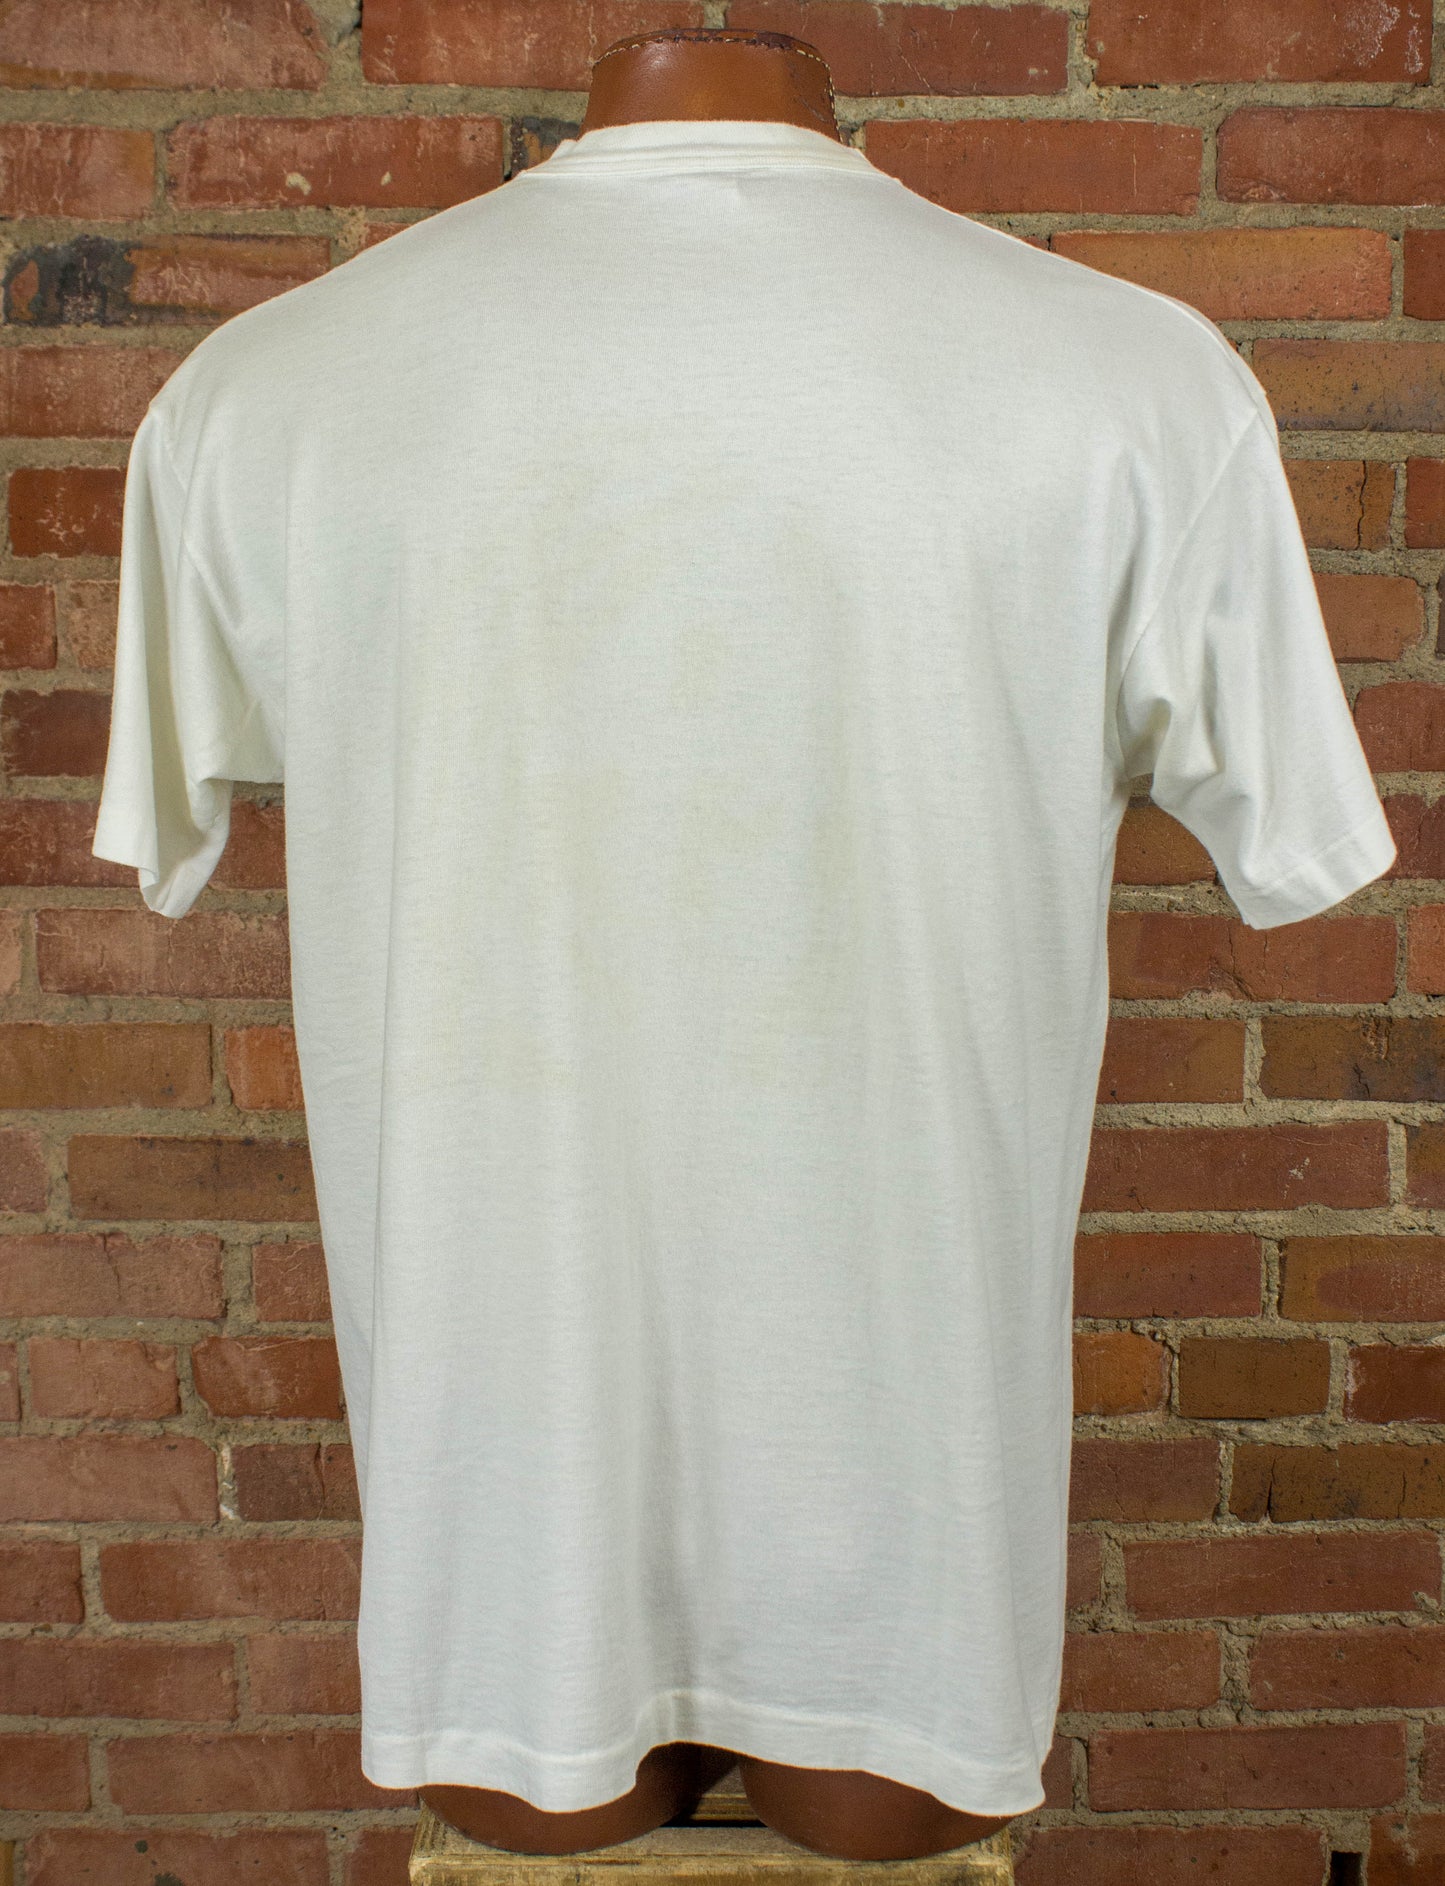 Vintage Kurt Cobain 1994 Colorful Portrait White Memorial Tee Concert T Shirt Unisex XL